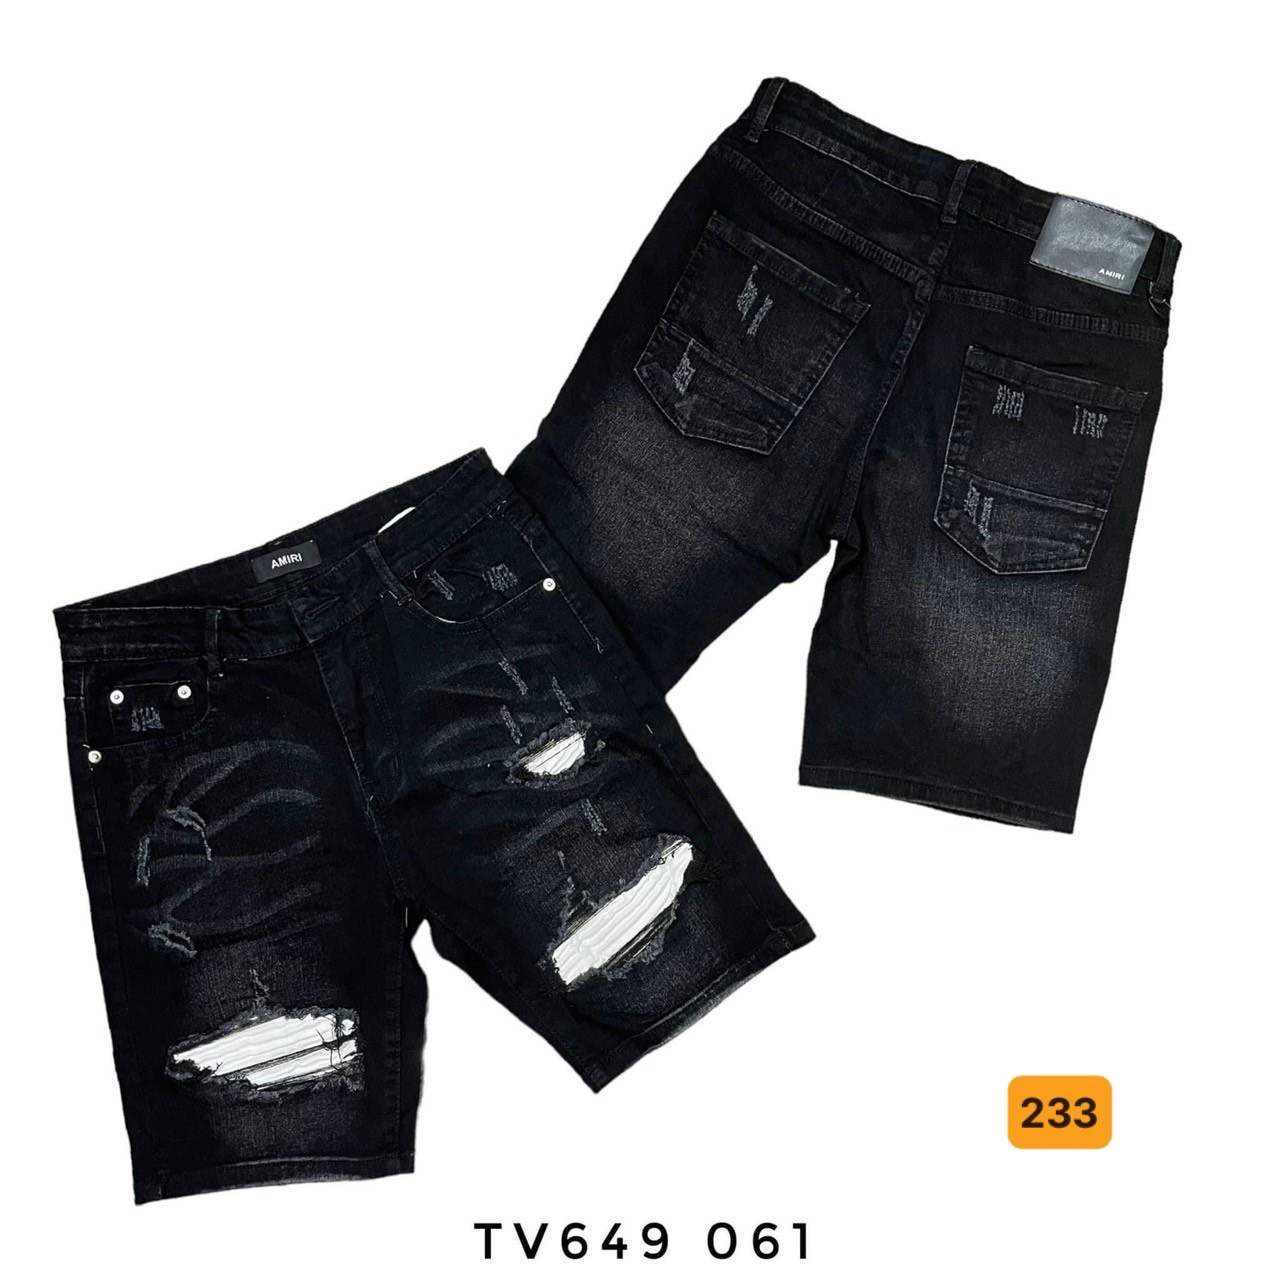 Quần short jean nam, quần short jean nam mẫu mới phong cách hàng quốc, họa tiết cao cấp OBOK FASHION MS233